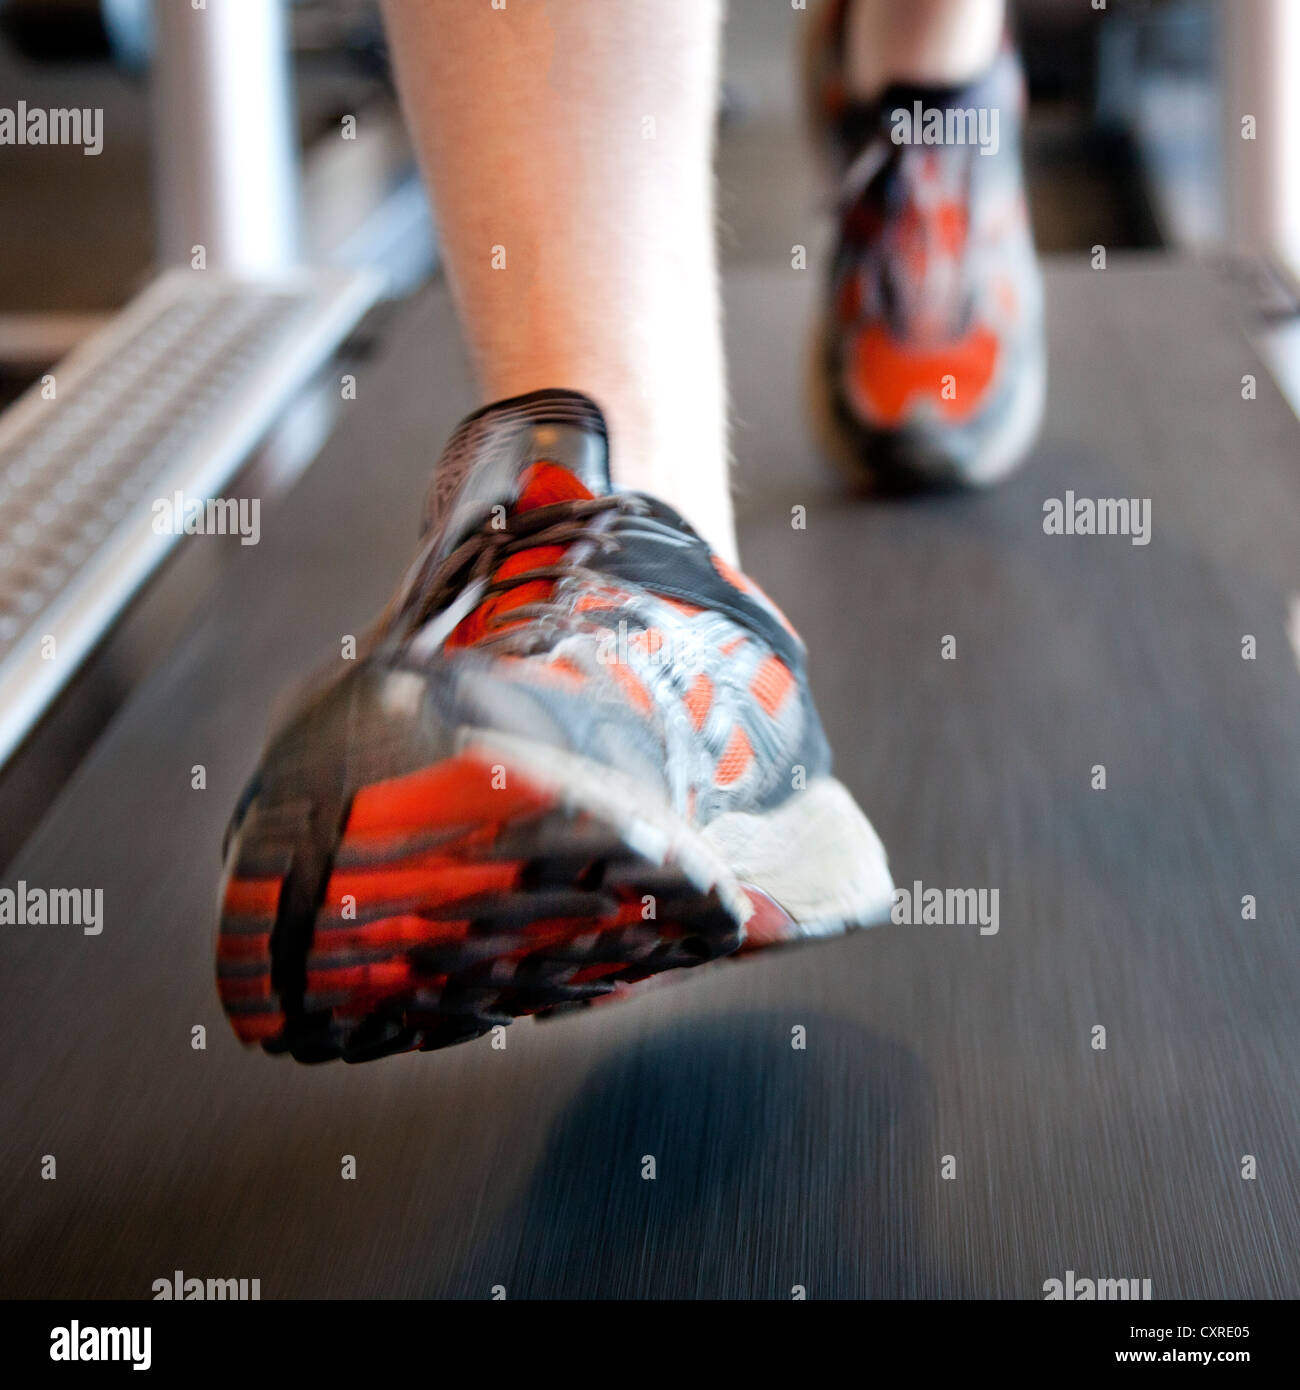 Des chaussures de course sur un tapis roulant à un centre de remise en forme, Regensburg, Bavière, Allemagne, Europe Banque D'Images